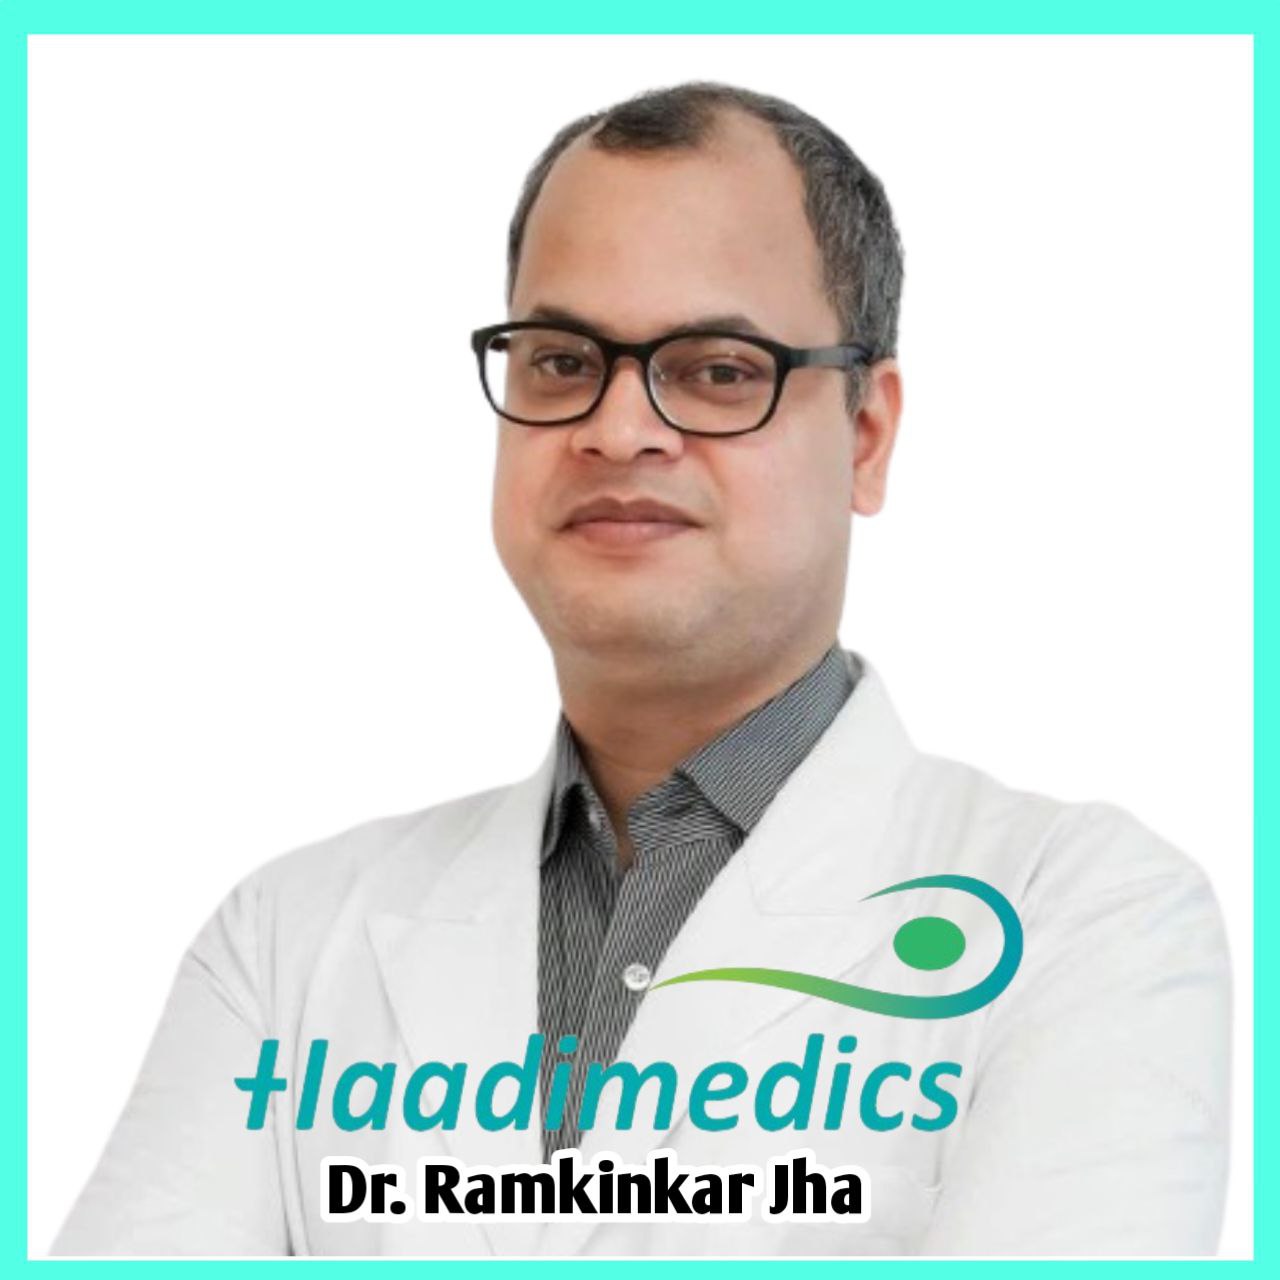 Dr Ramkinkar Jha